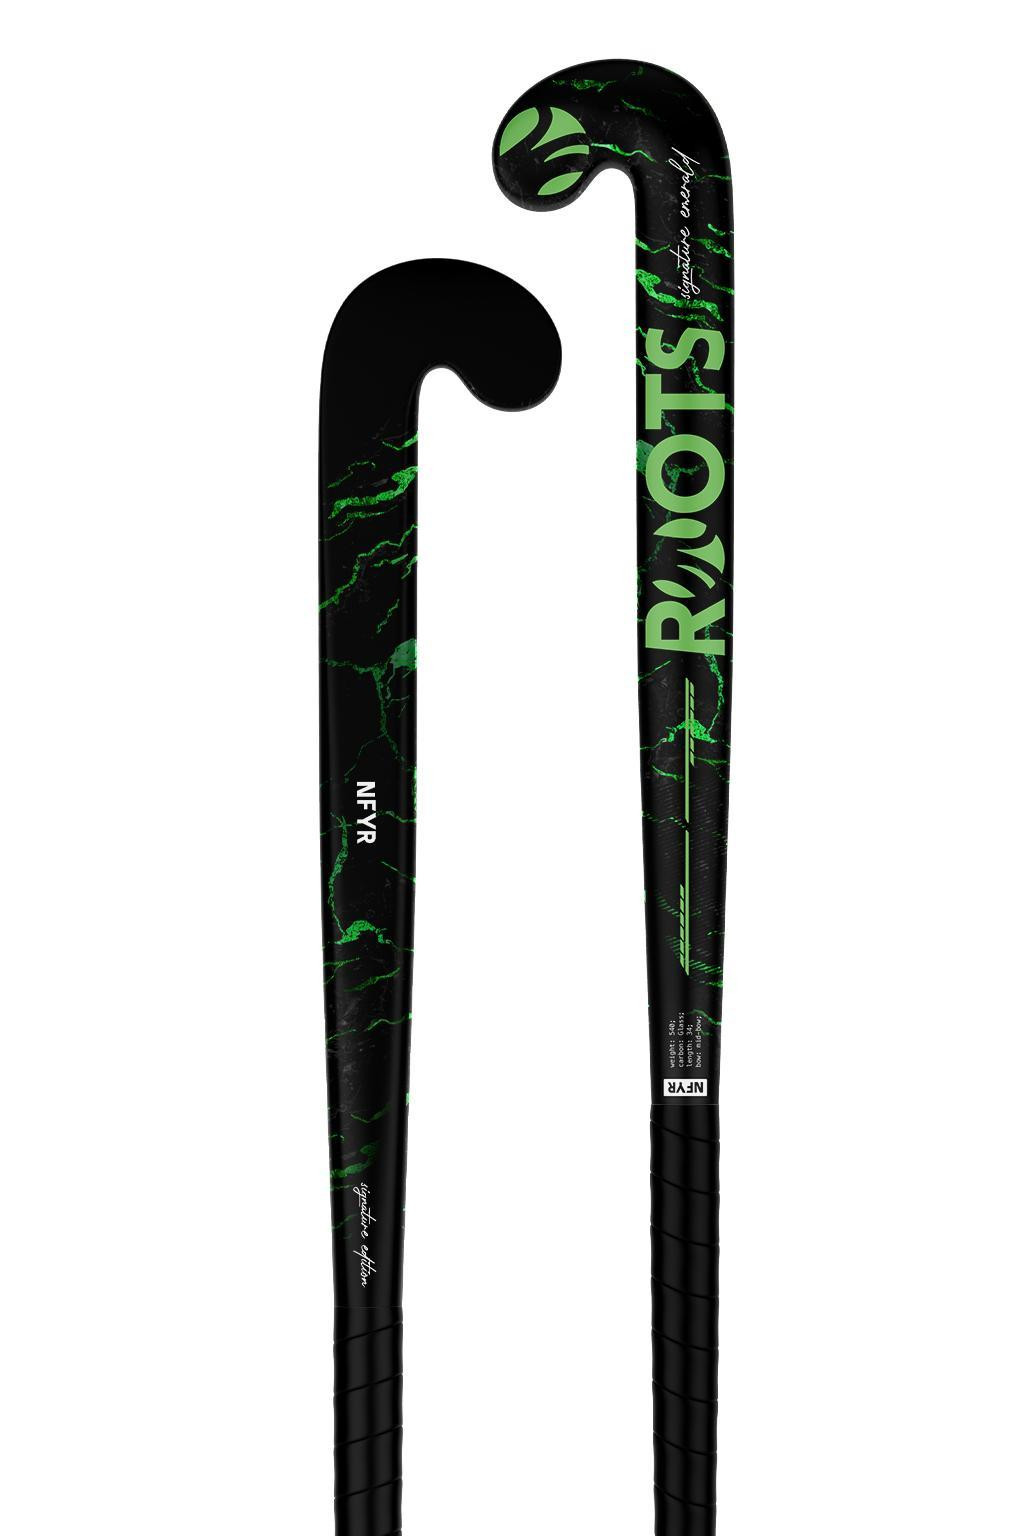 Hockeystick Signature Wood Series Black Emerald